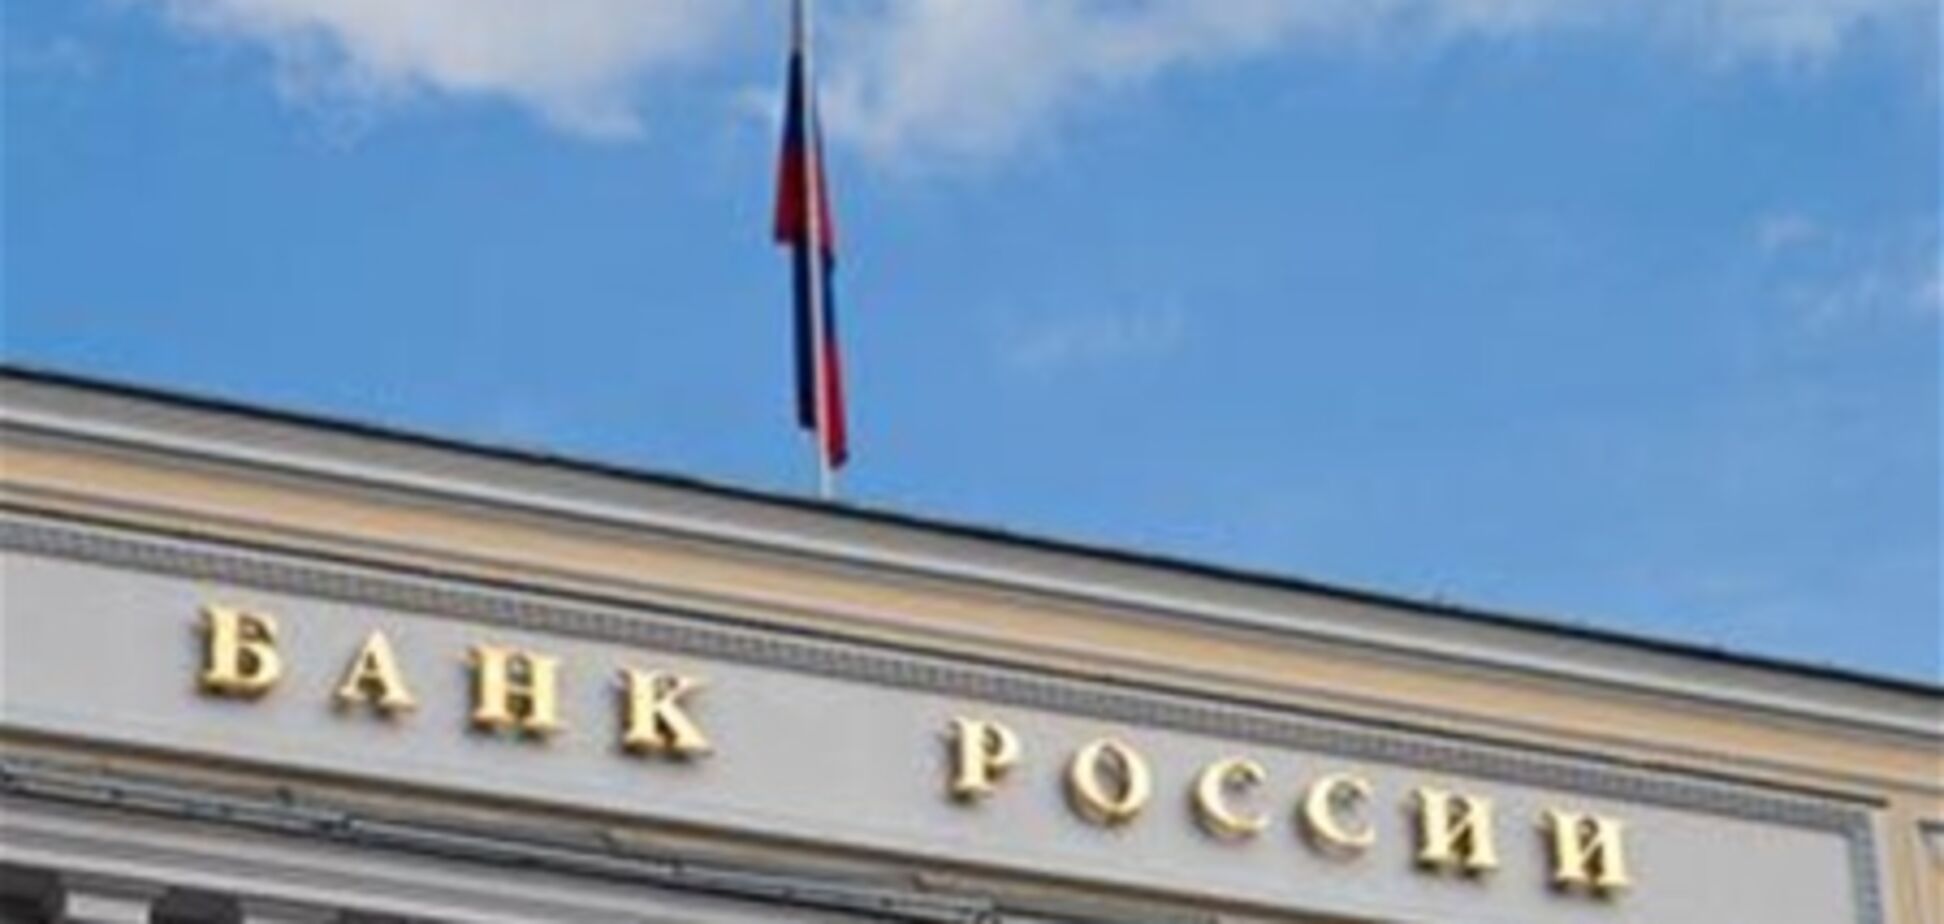 Банк России будет наказывать недобросовестных банкиров